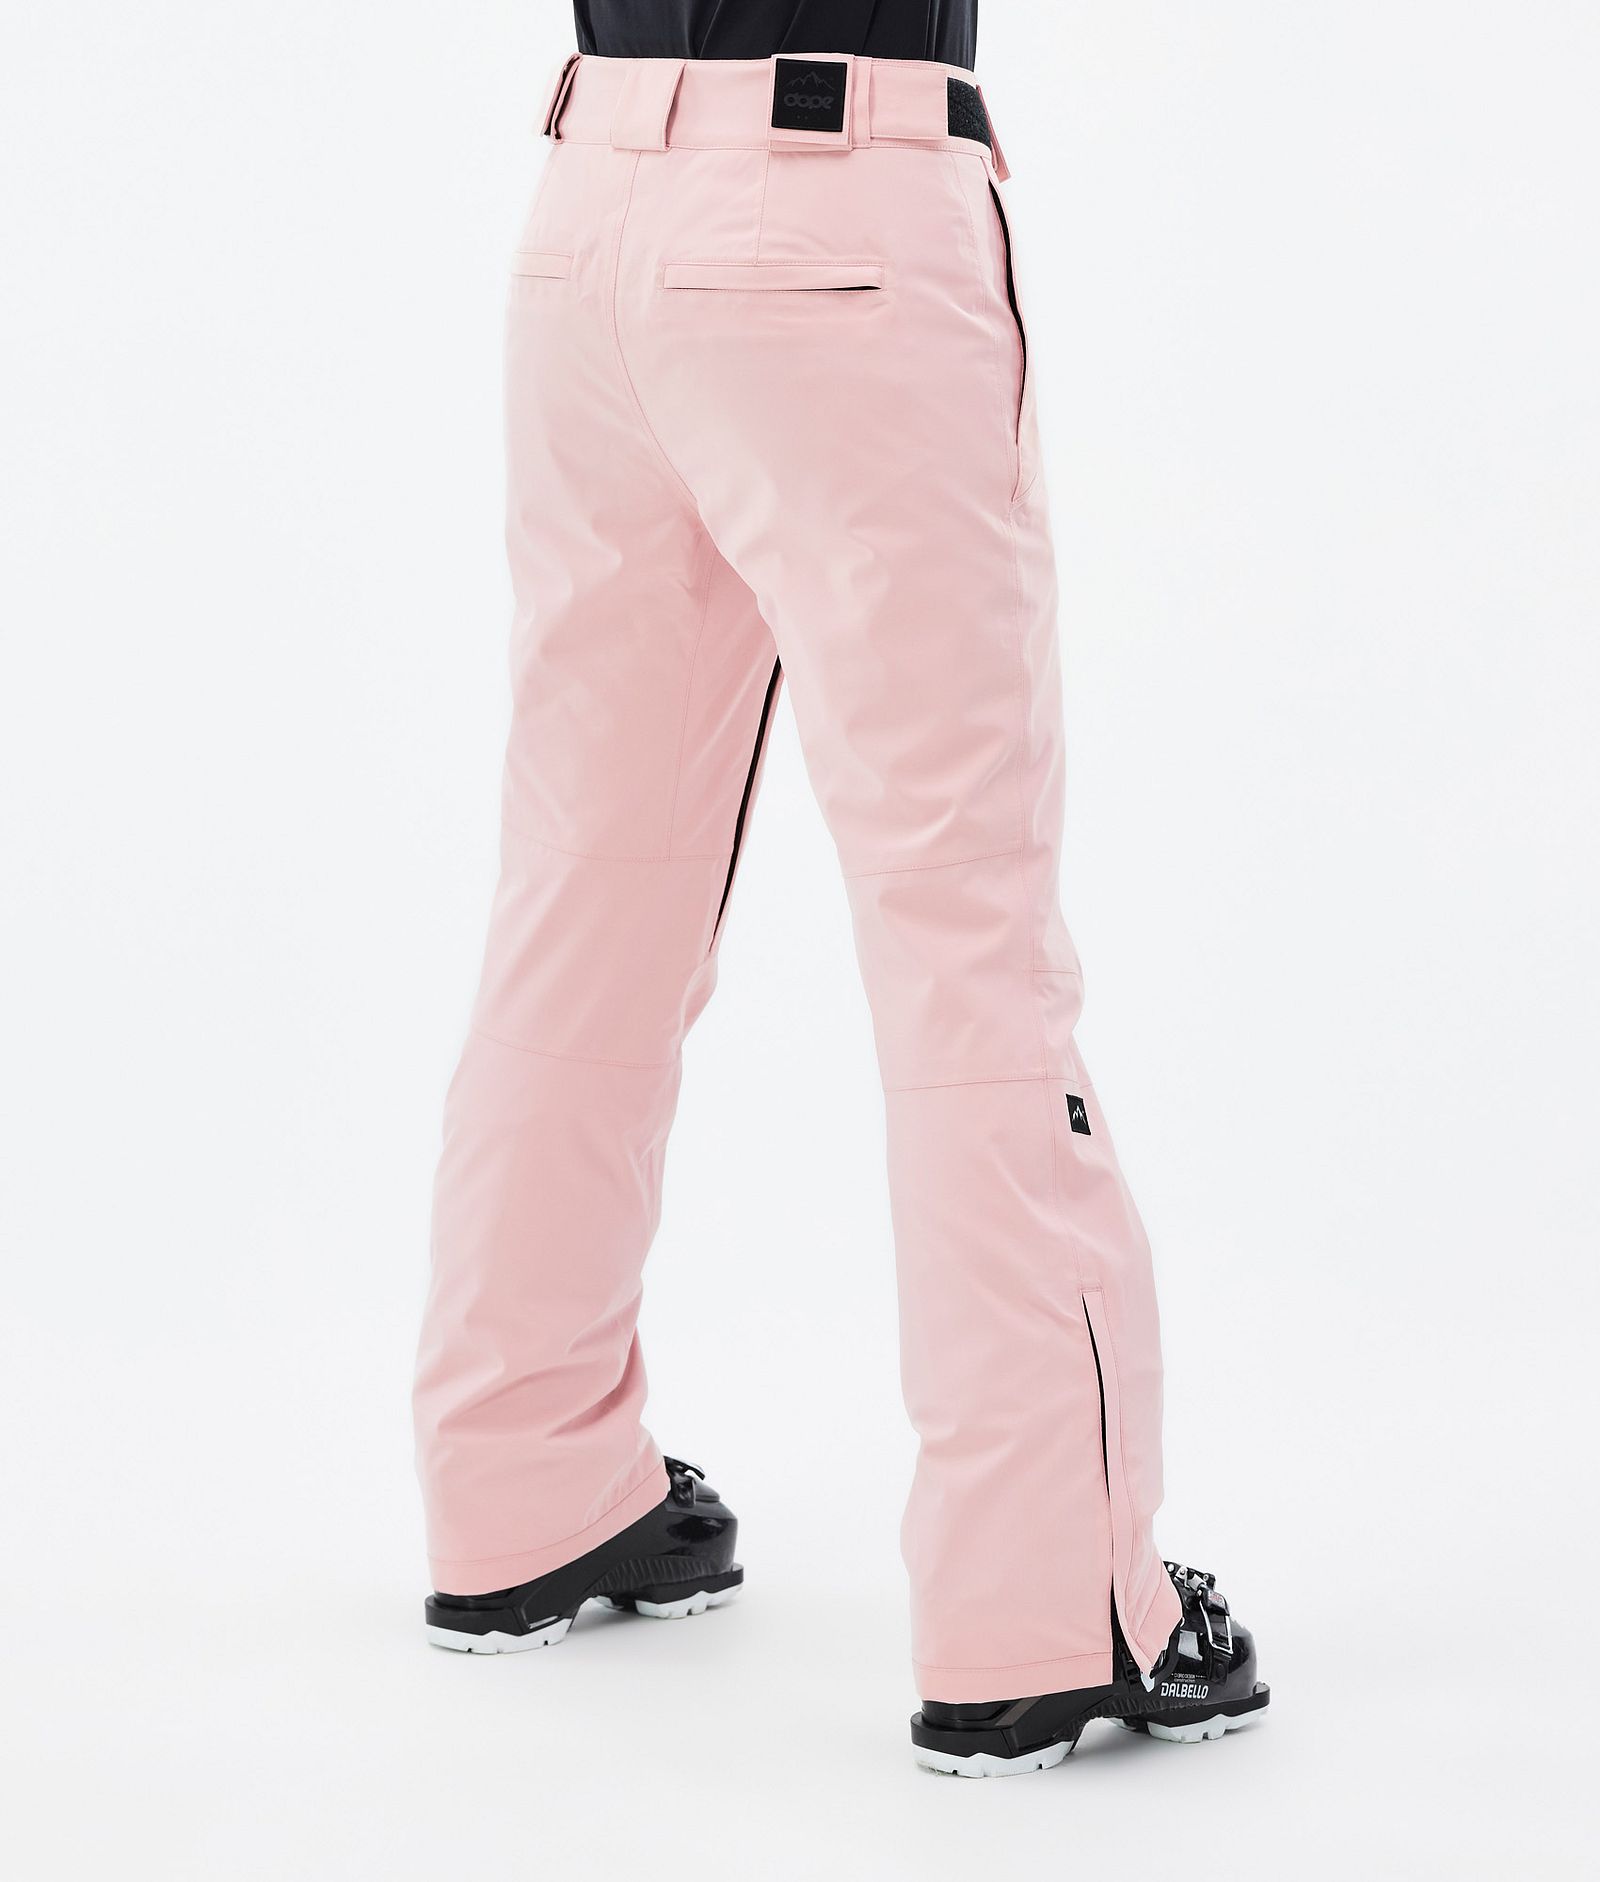 Con W 2022 Pantalon de Ski Femme Soft Pink